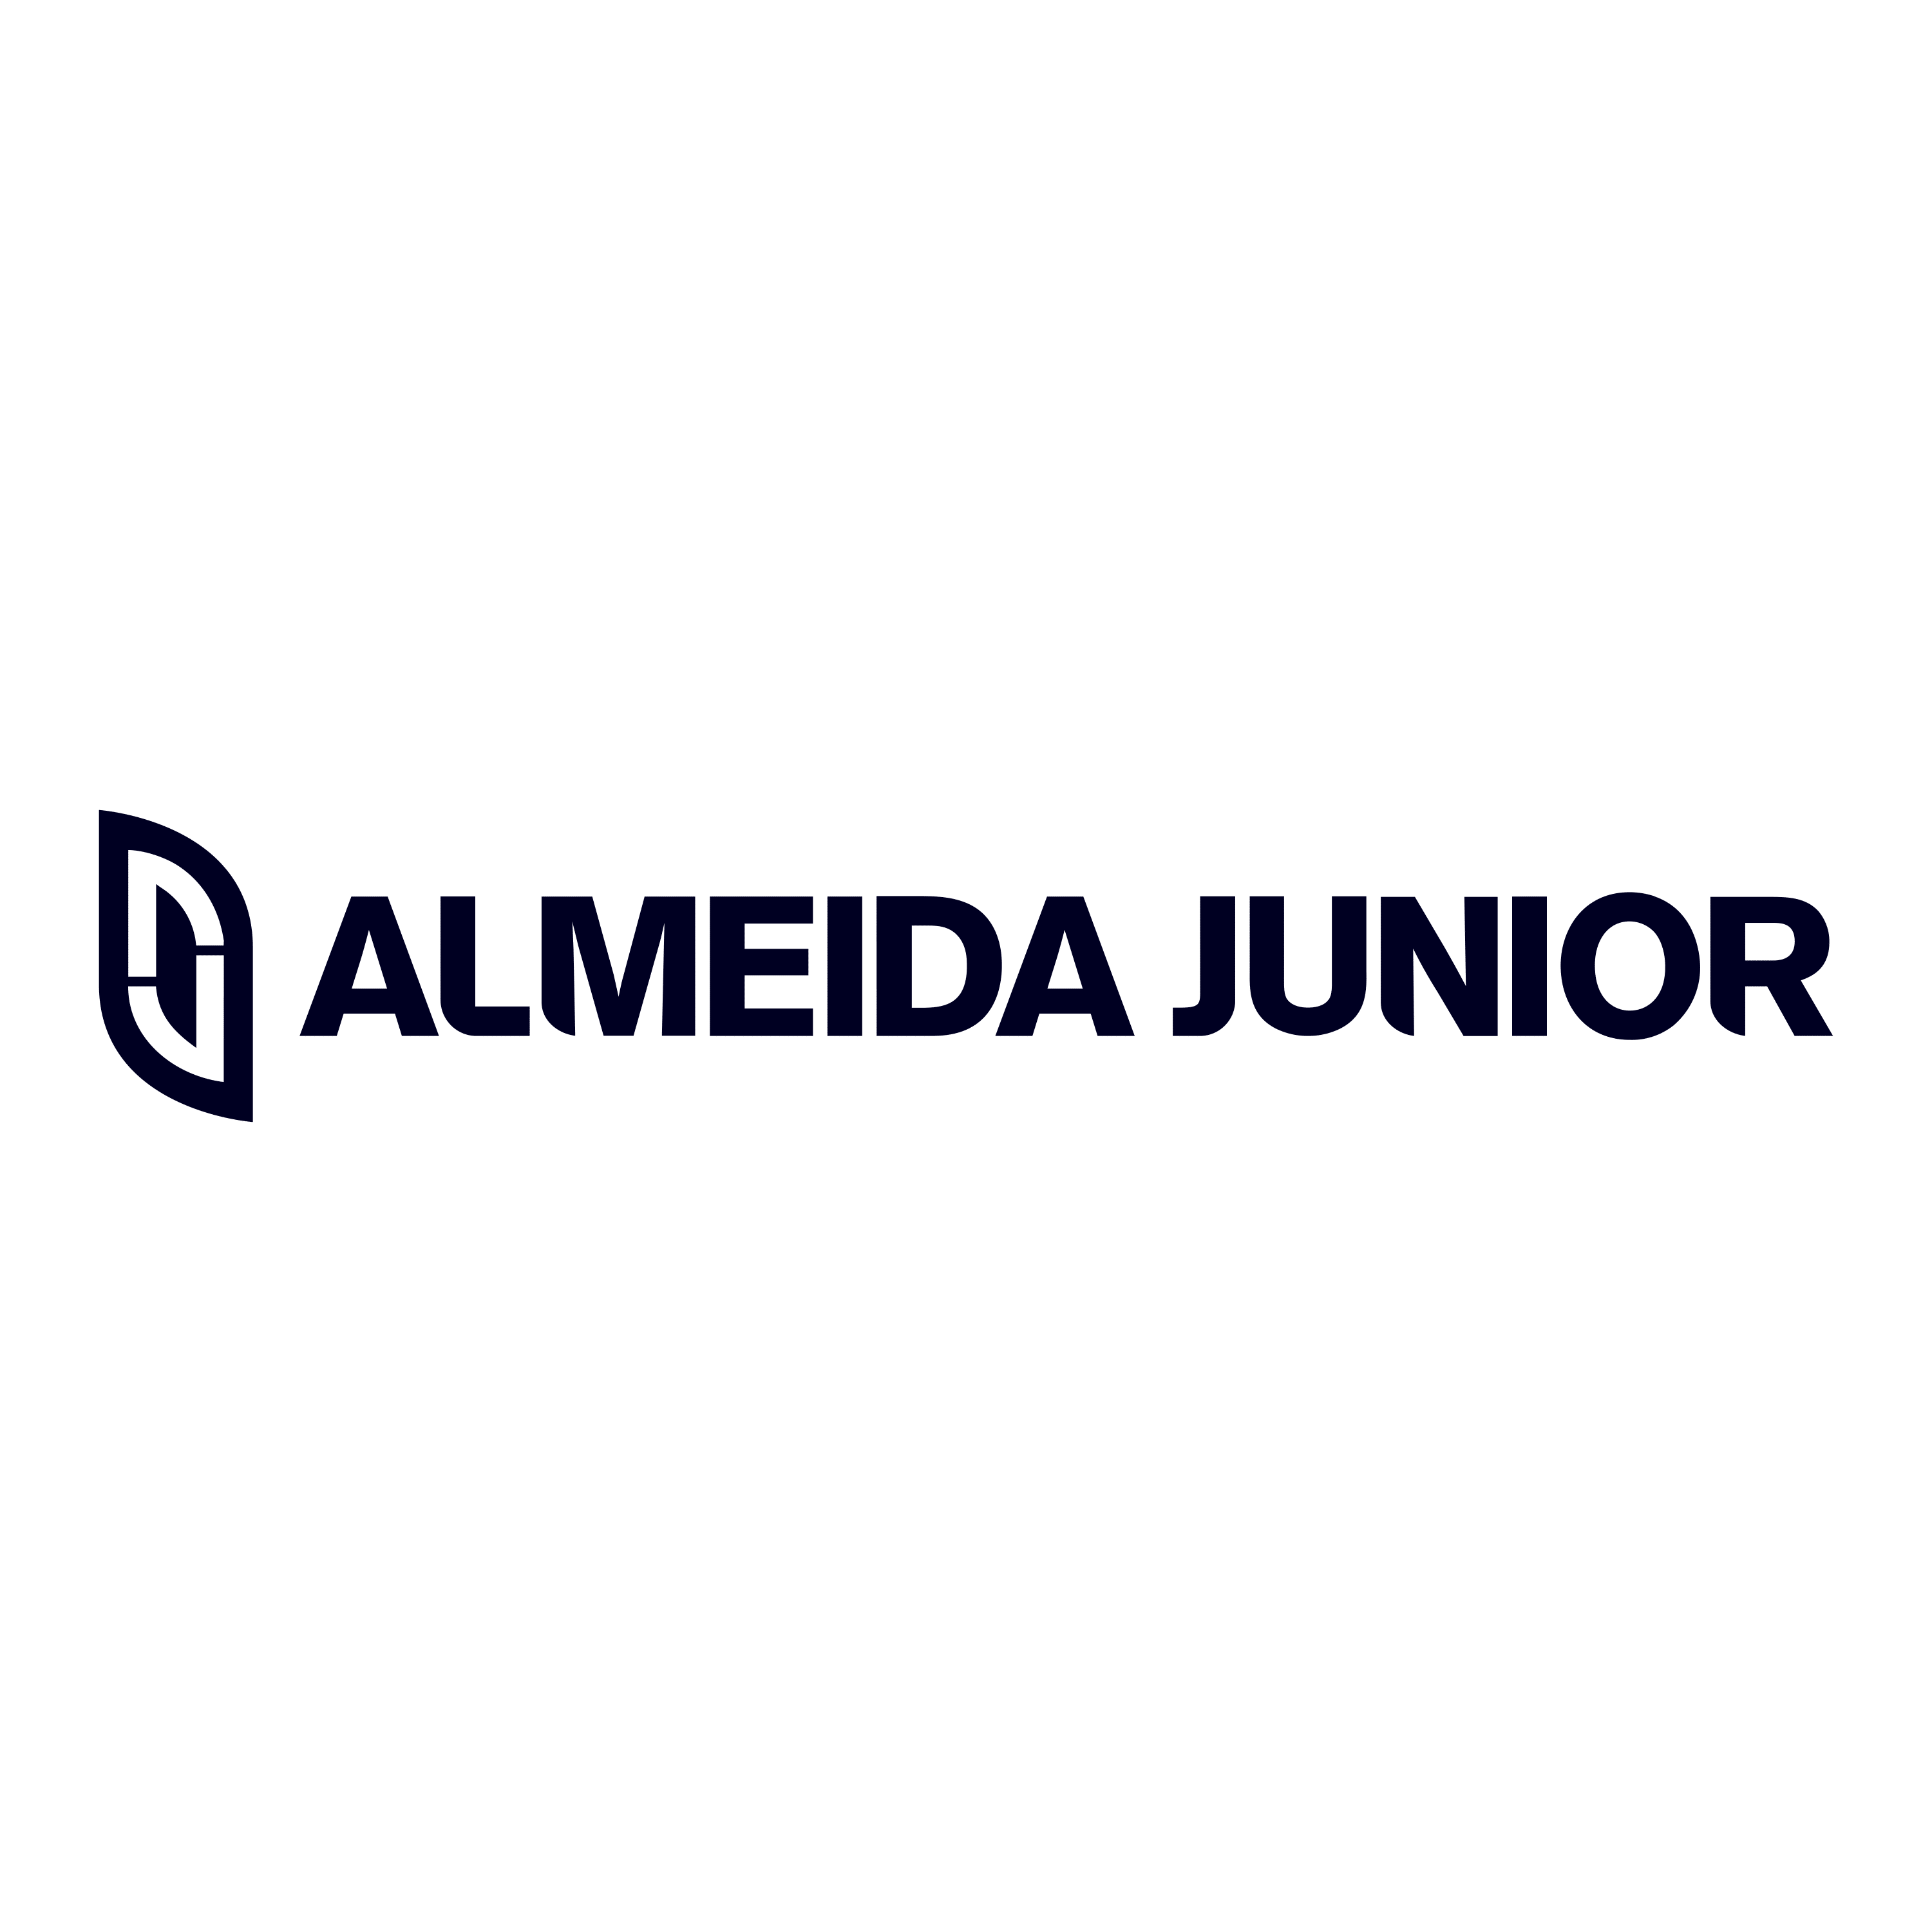 Almeida Junior - LOGO-1